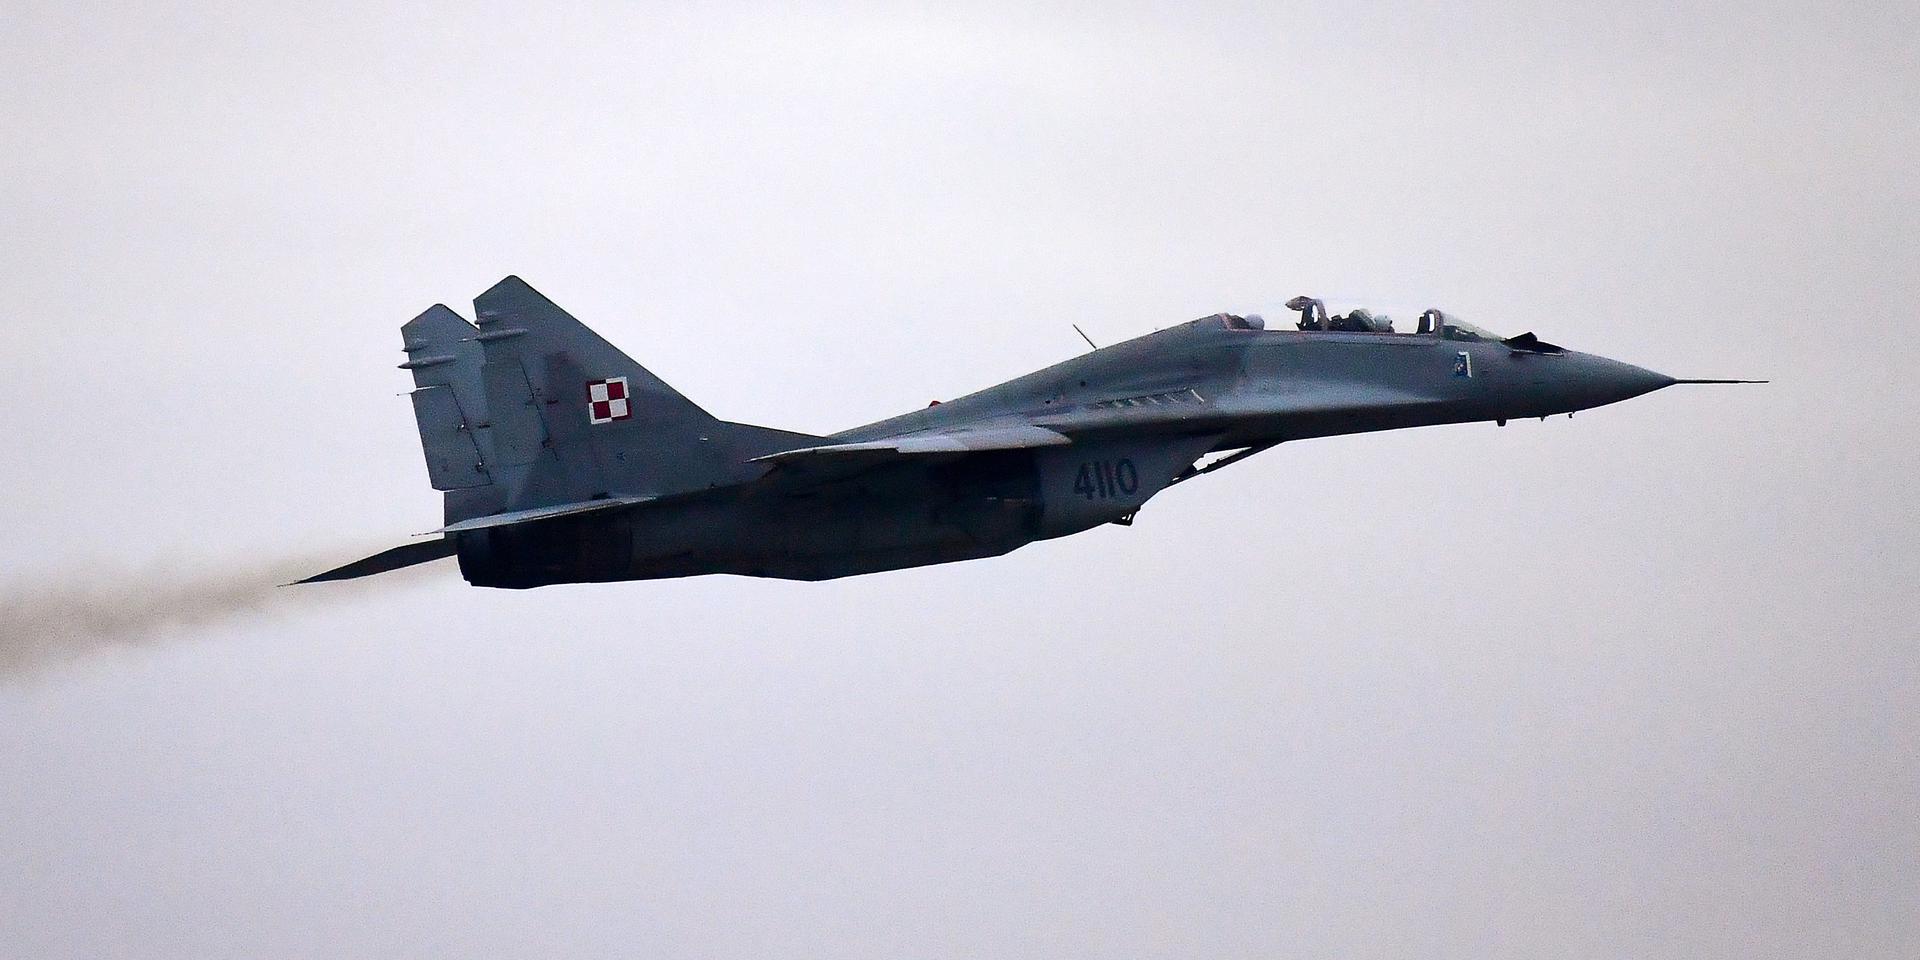 Польша и Словакия поставят Украине истребители МиГ-29. Смогут ли они изменить ситуацию на фронте?